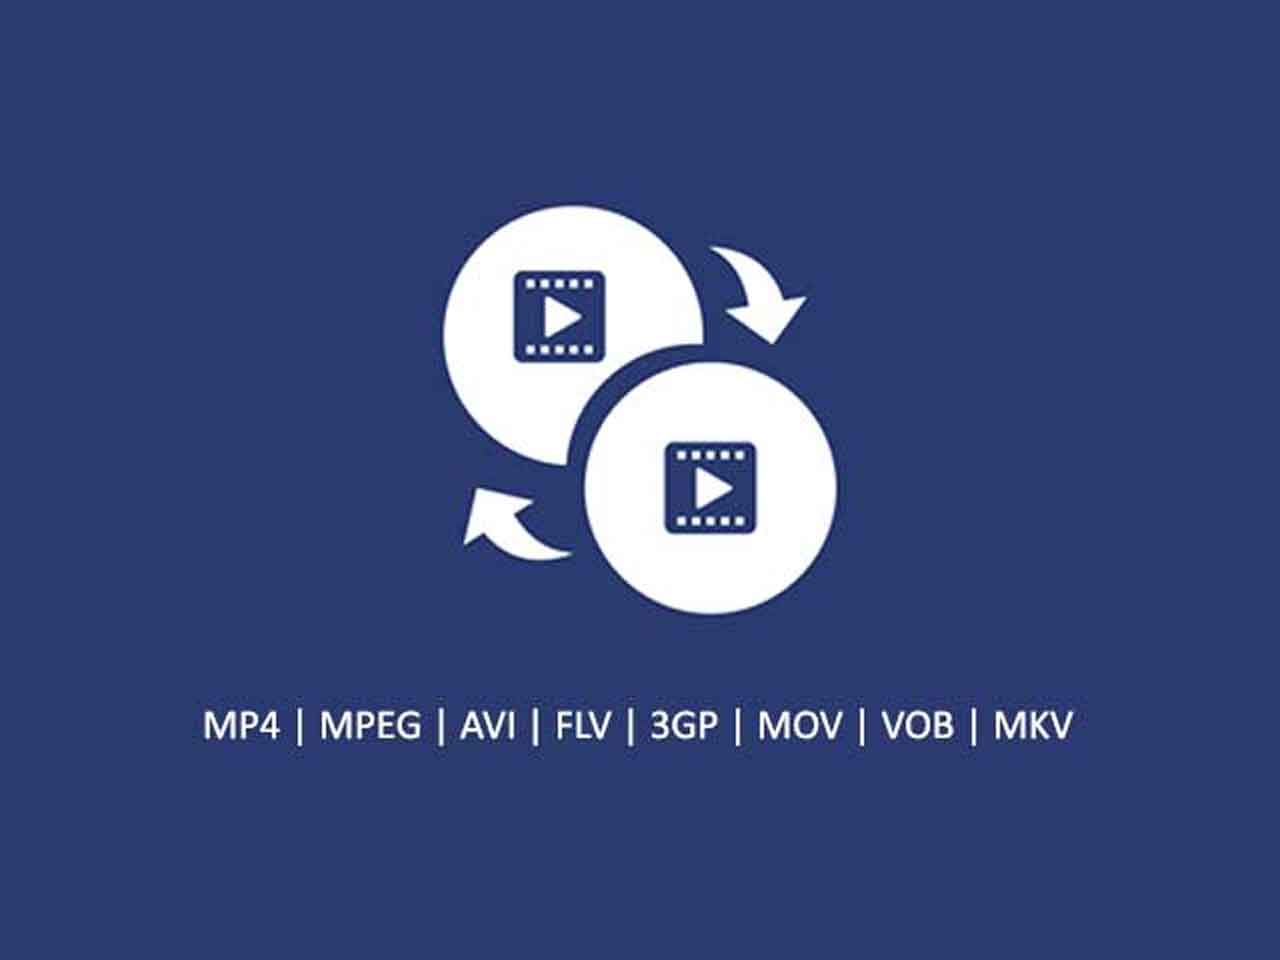 Cara Mengubah Format Video Ke Mp4 Tanpa Software. 7 Cara Mengubah Format Video secara Online Tanpa Software